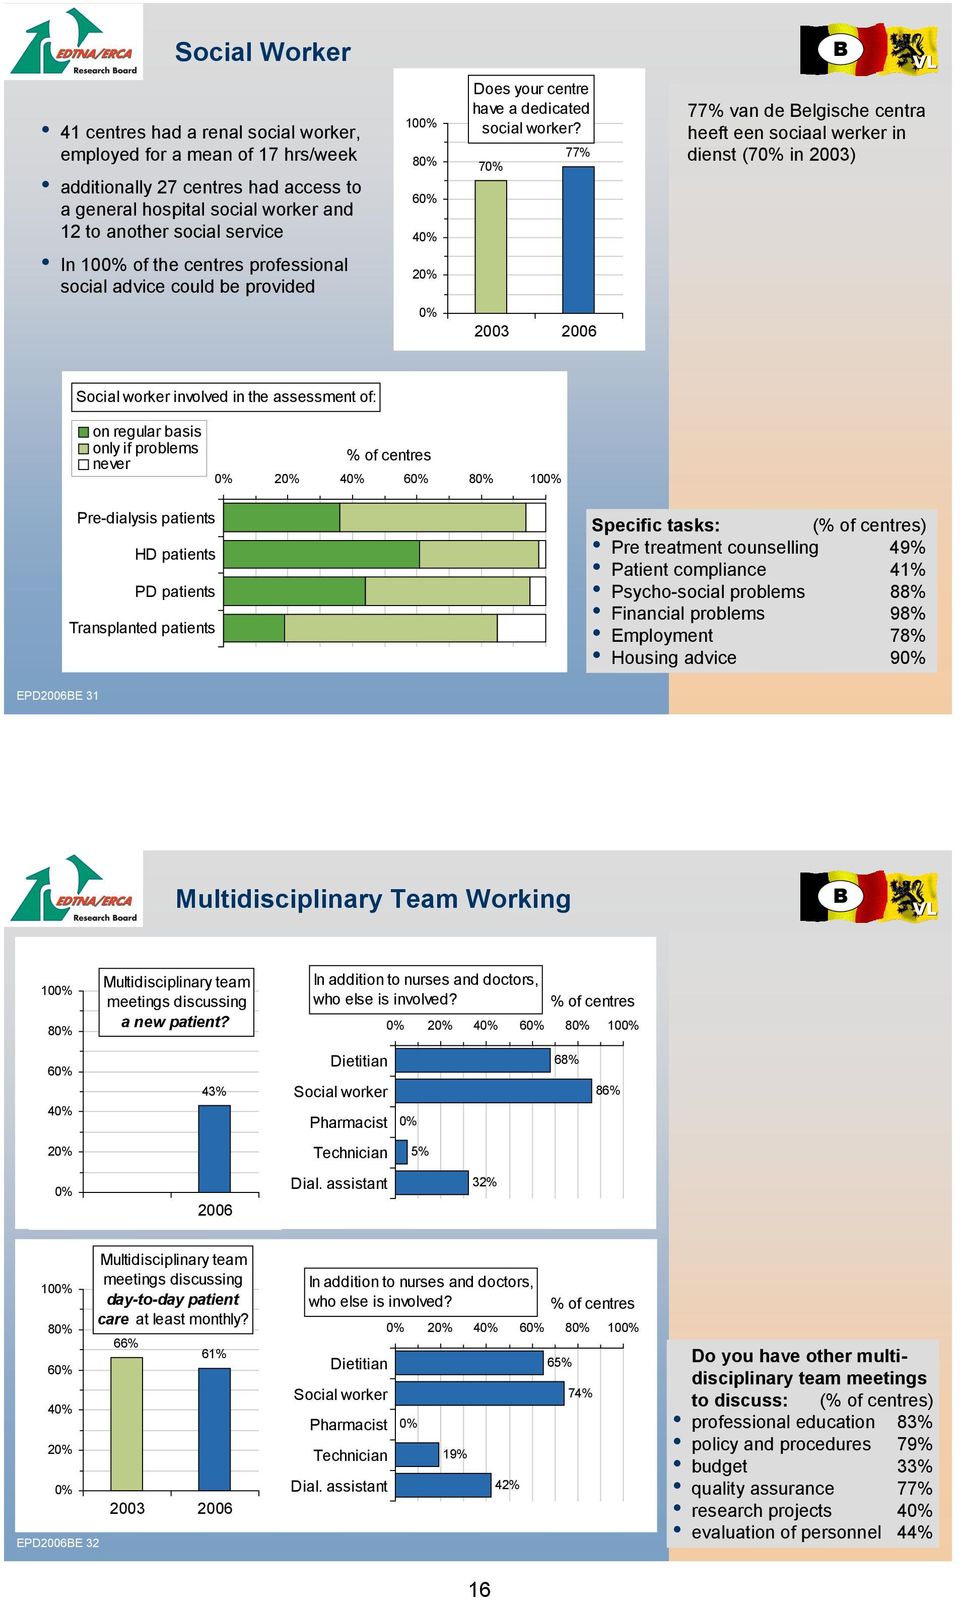 7 77% 77% van de elgische centra heeft een sociaal werker in dienst (7 in ) Social worker involved in the assessment of: on regular basis only if problems never 2 4 6 8 10 Pre-dialysis patients HD